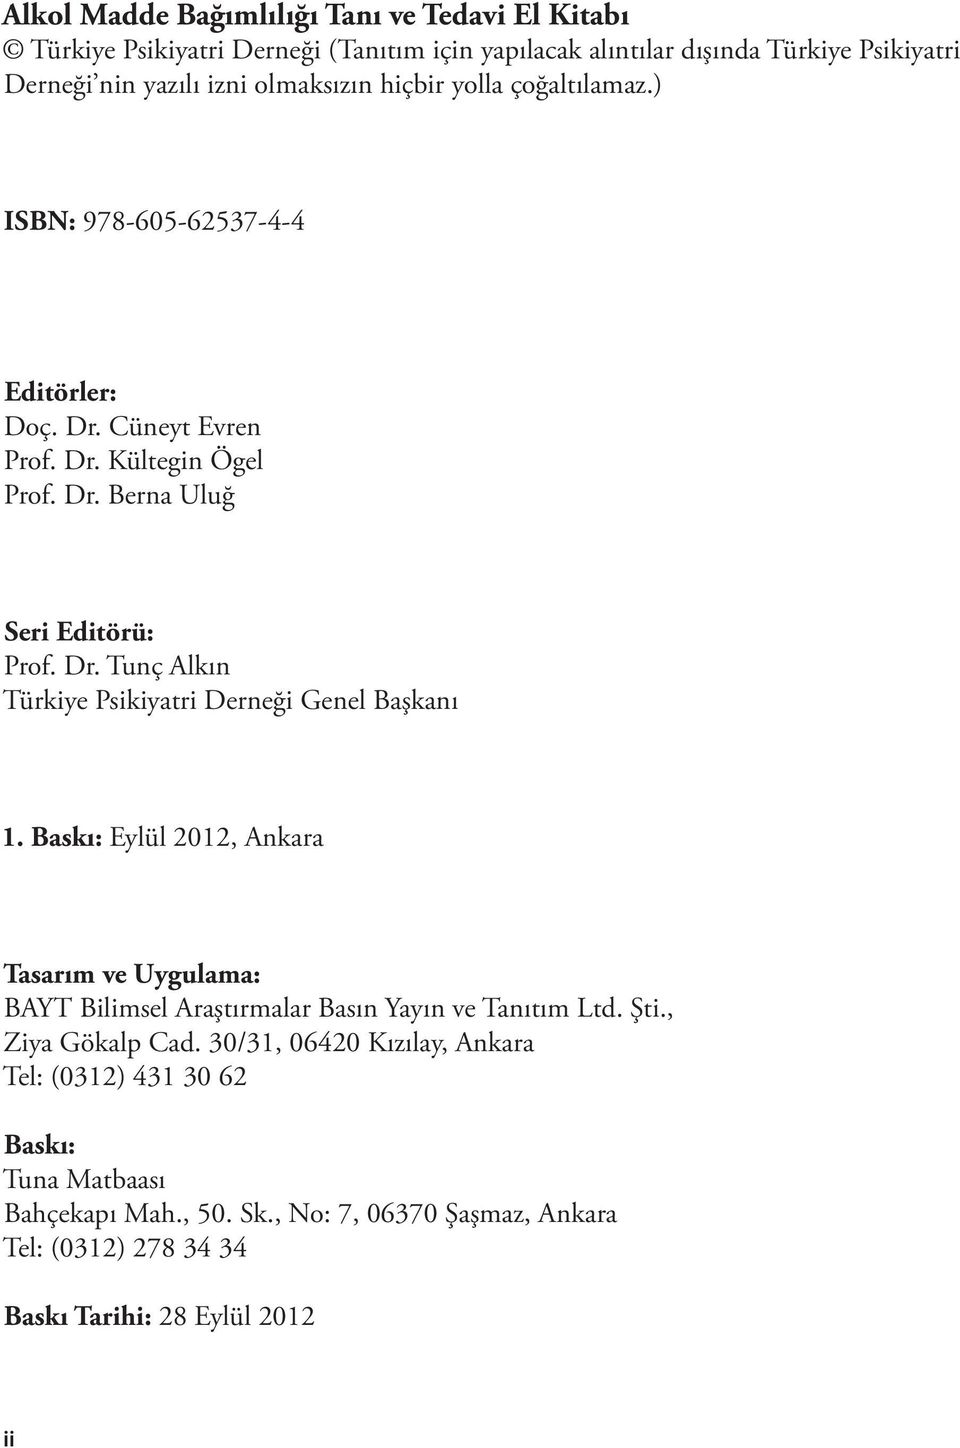 Baskı: Eylül 2012, Ankara Tasarım ve Uygulama: BAYT Bilimsel Araştırmalar Basın Yayın ve Tanıtım Ltd. Şti., Ziya Gökalp Cad.